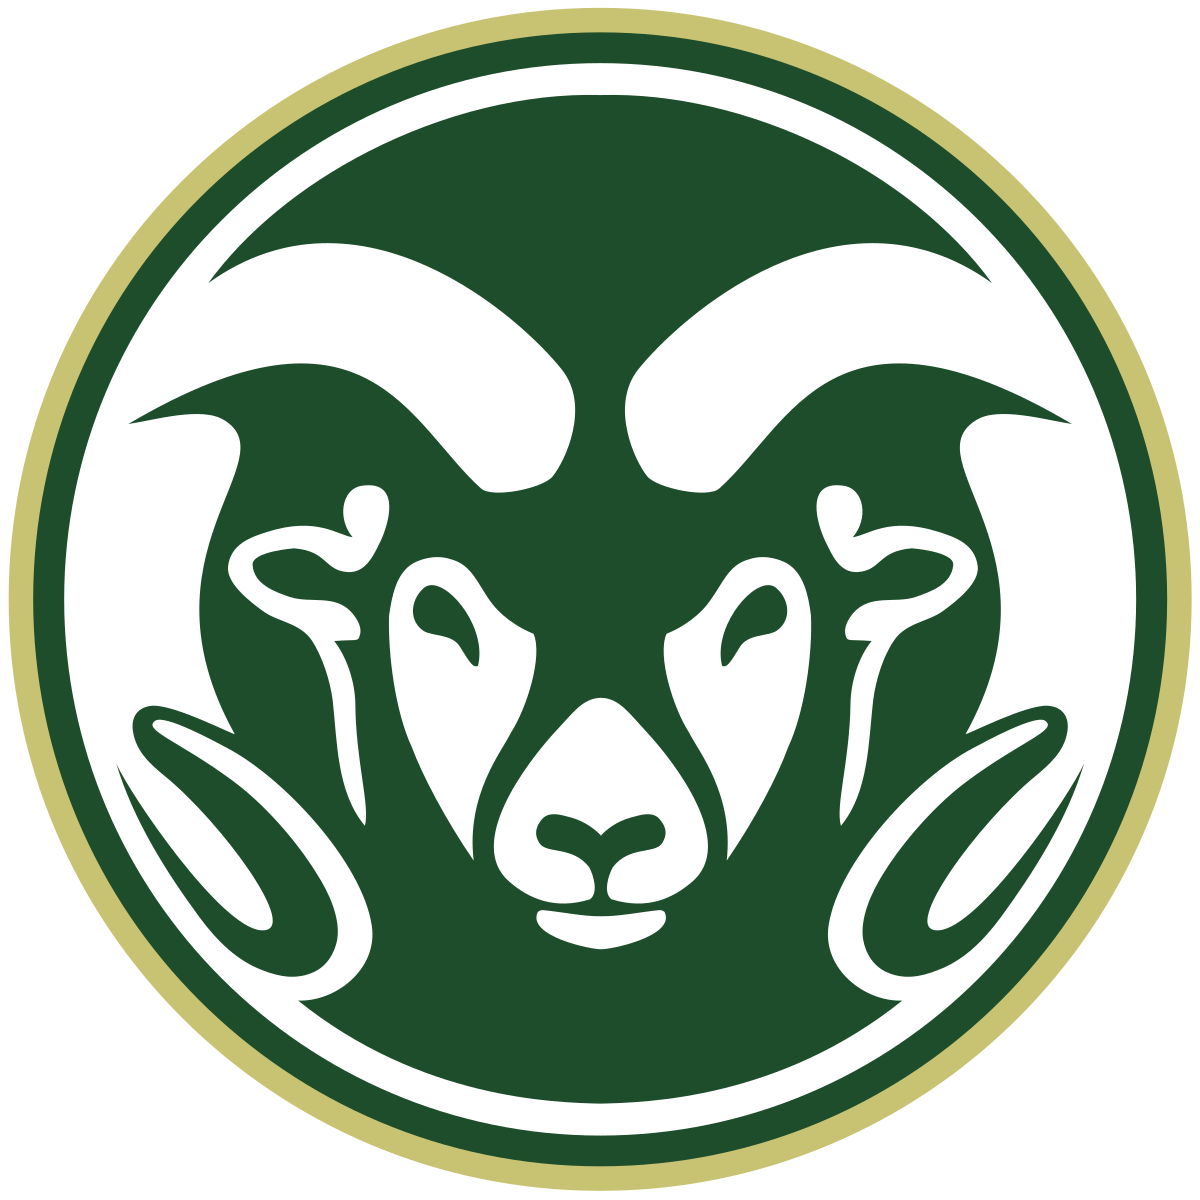 Colorado State Logo - Colorado State Rams